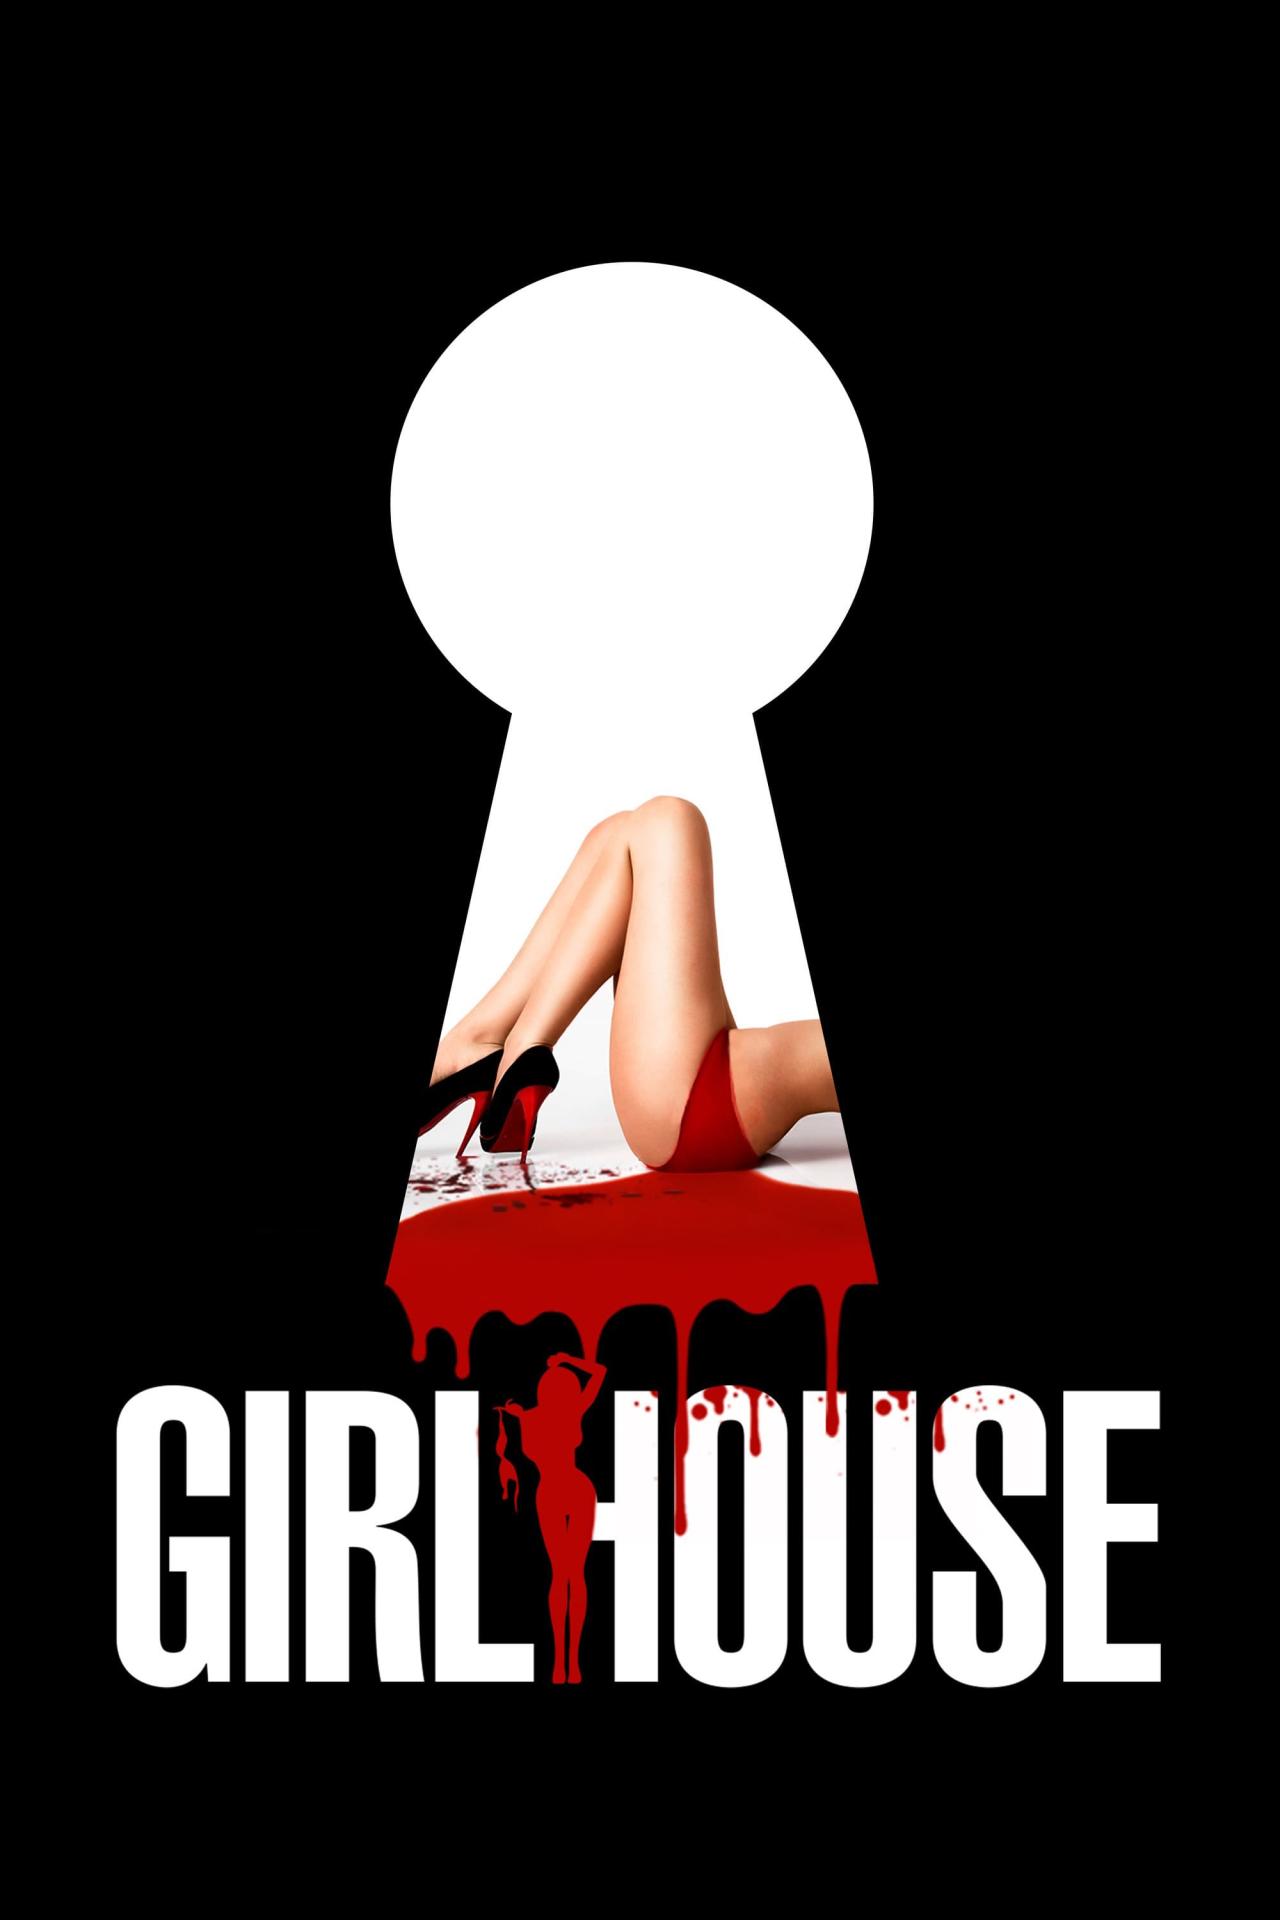 Girlhouse est-il disponible sur Netflix ou autre ?